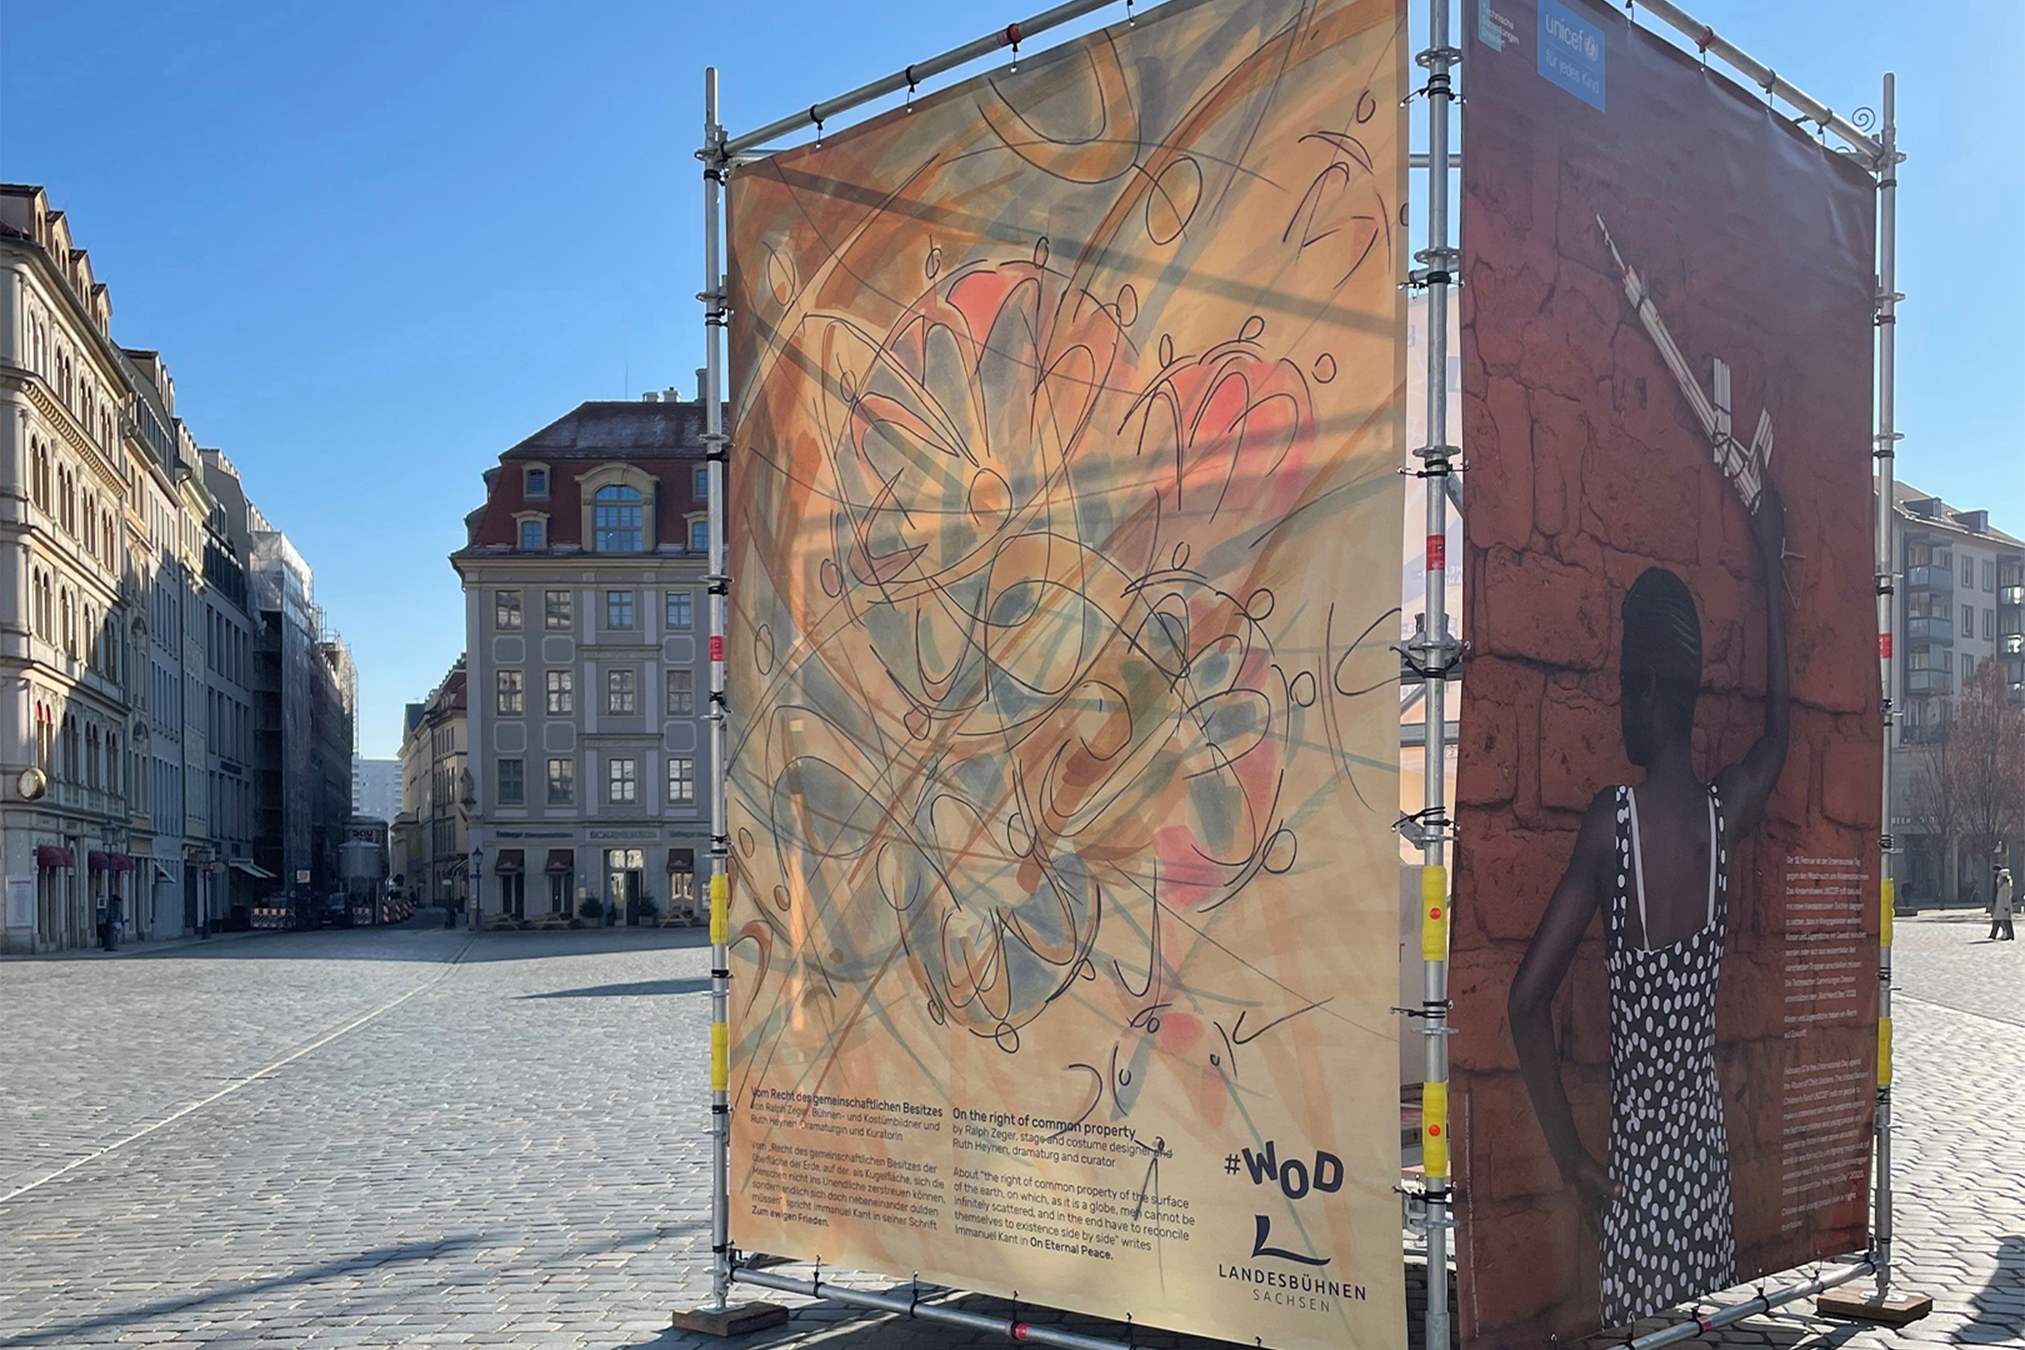 Auf einem kopfsteingepflasterten Platz in Dresden stehen Bauzäune mit einer Plakataktion zum Thema "Weltoffenes Dresden".